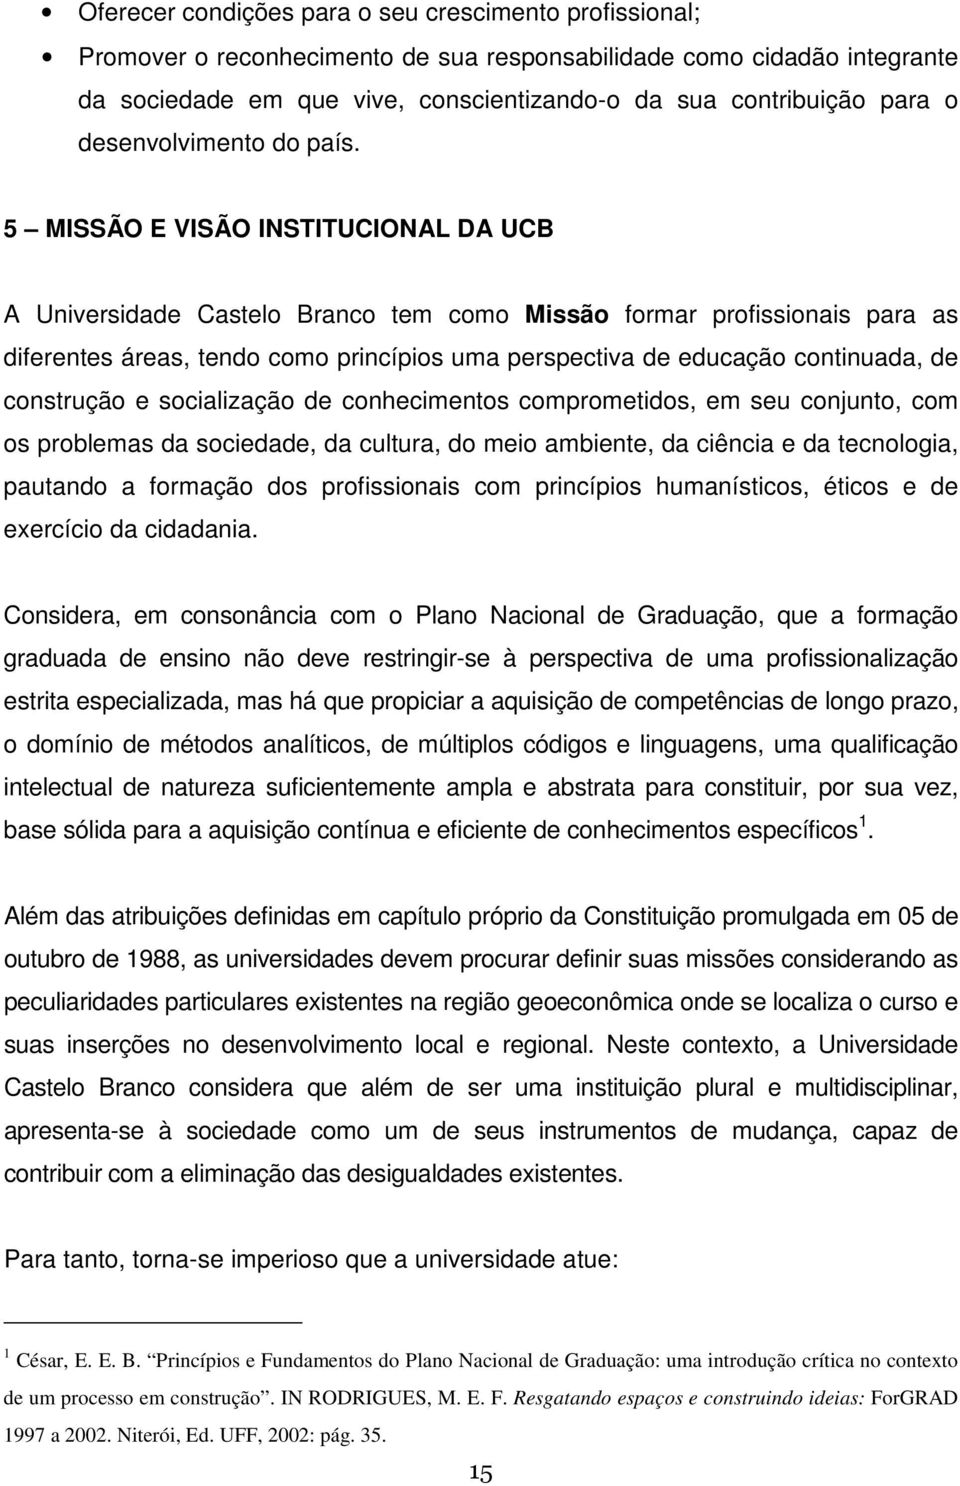 5 MISSÃO E VISÃO INSTITUCIONAL DA UCB A Universidade Castelo Branco tem como Missão formar profissionais para as diferentes áreas, tendo como princípios uma perspectiva de educação continuada, de